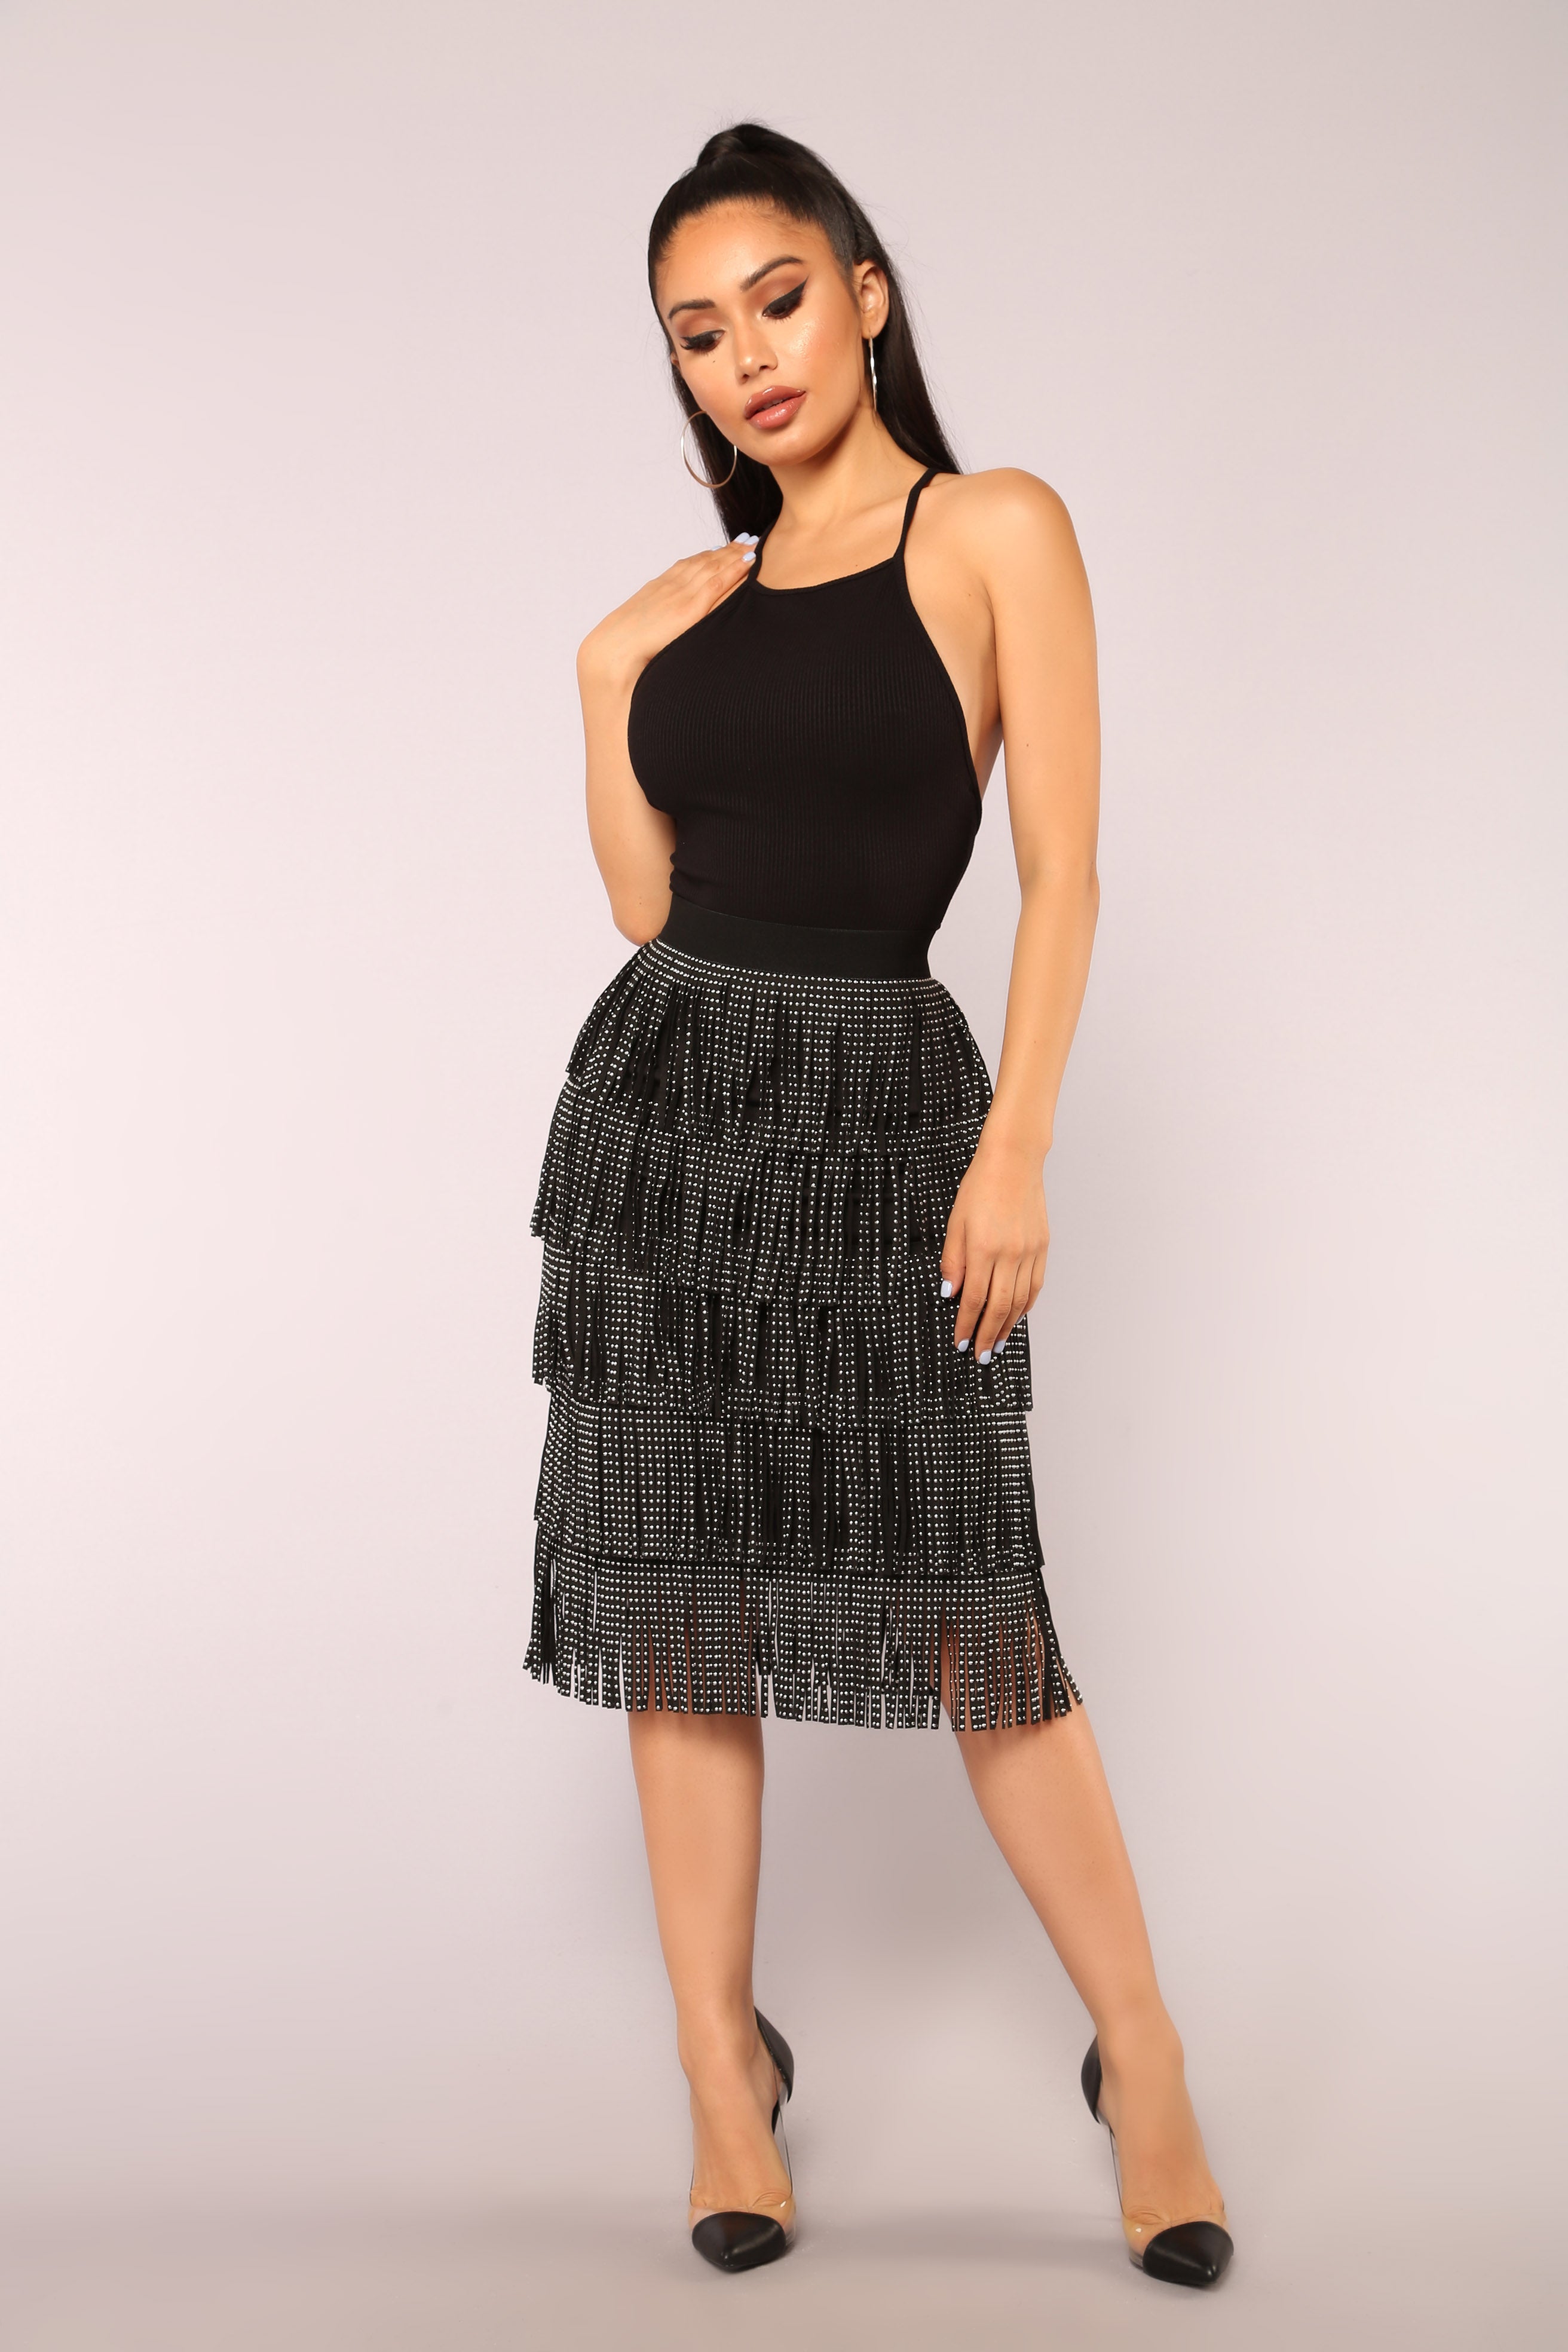 Glow Up Fringe Skirt - Black – Fashion Nova